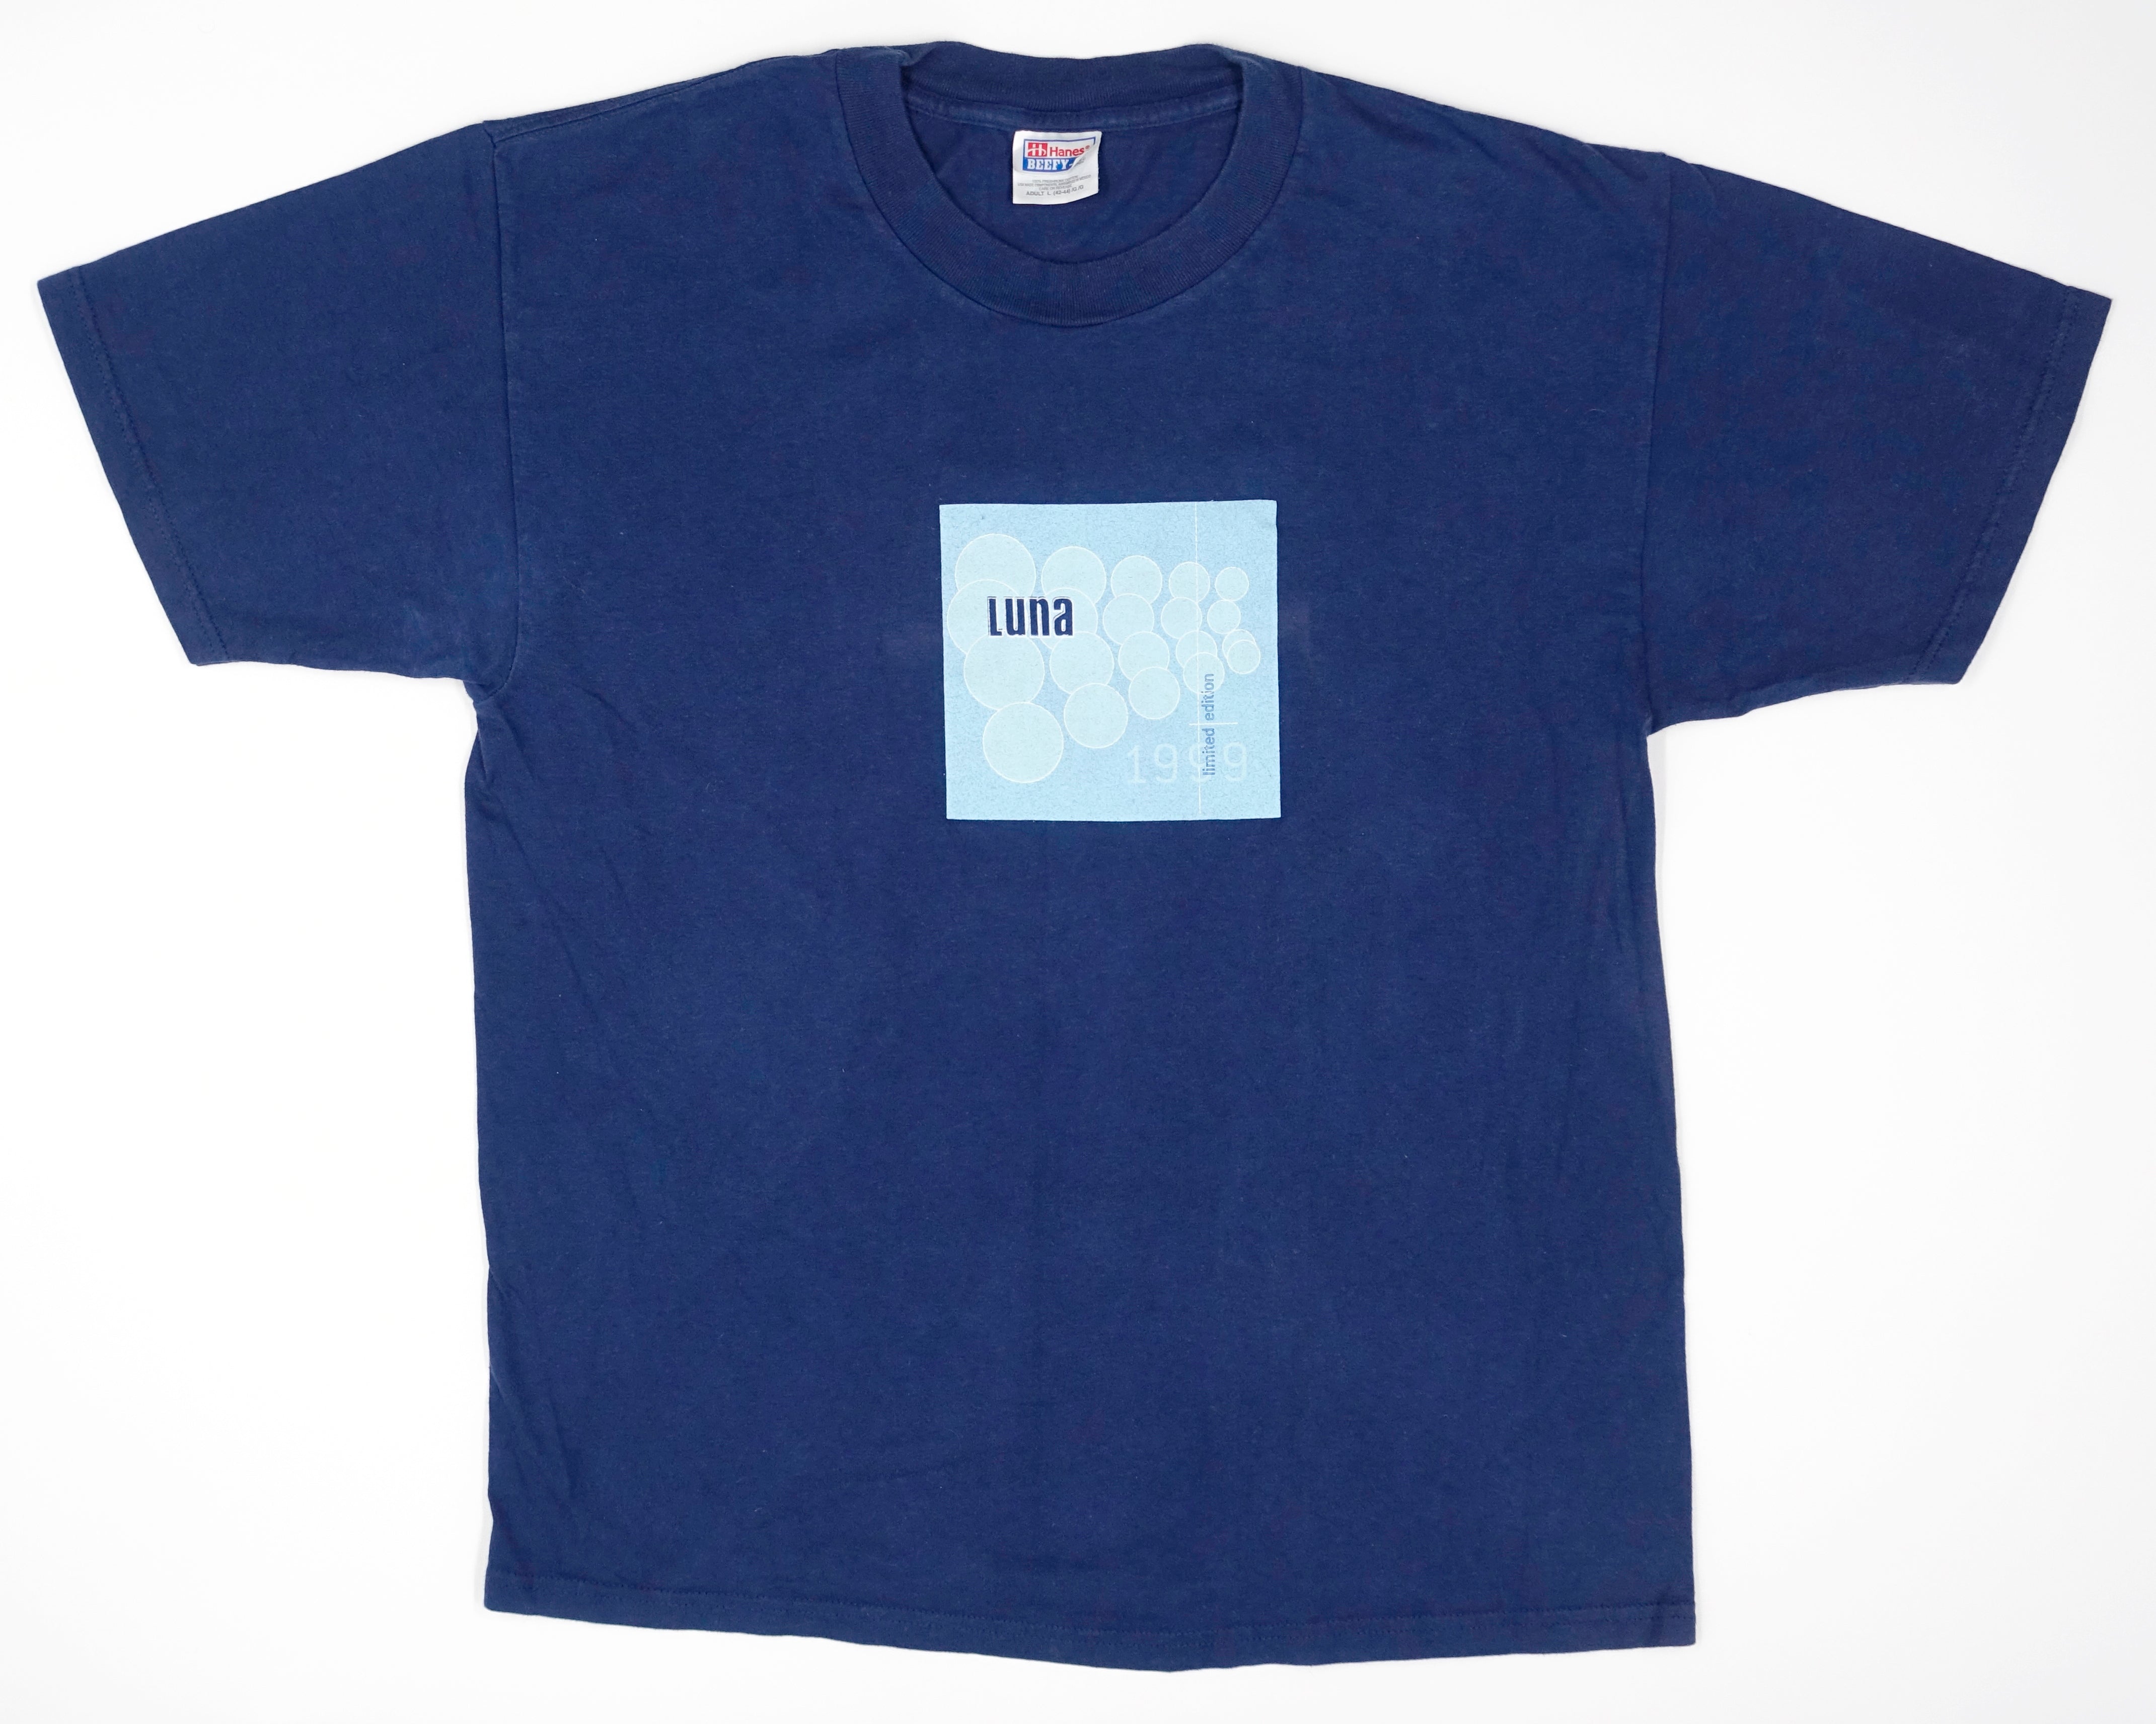 Luna – Limited Edition 1999 Promo Tour Shirt Size Large